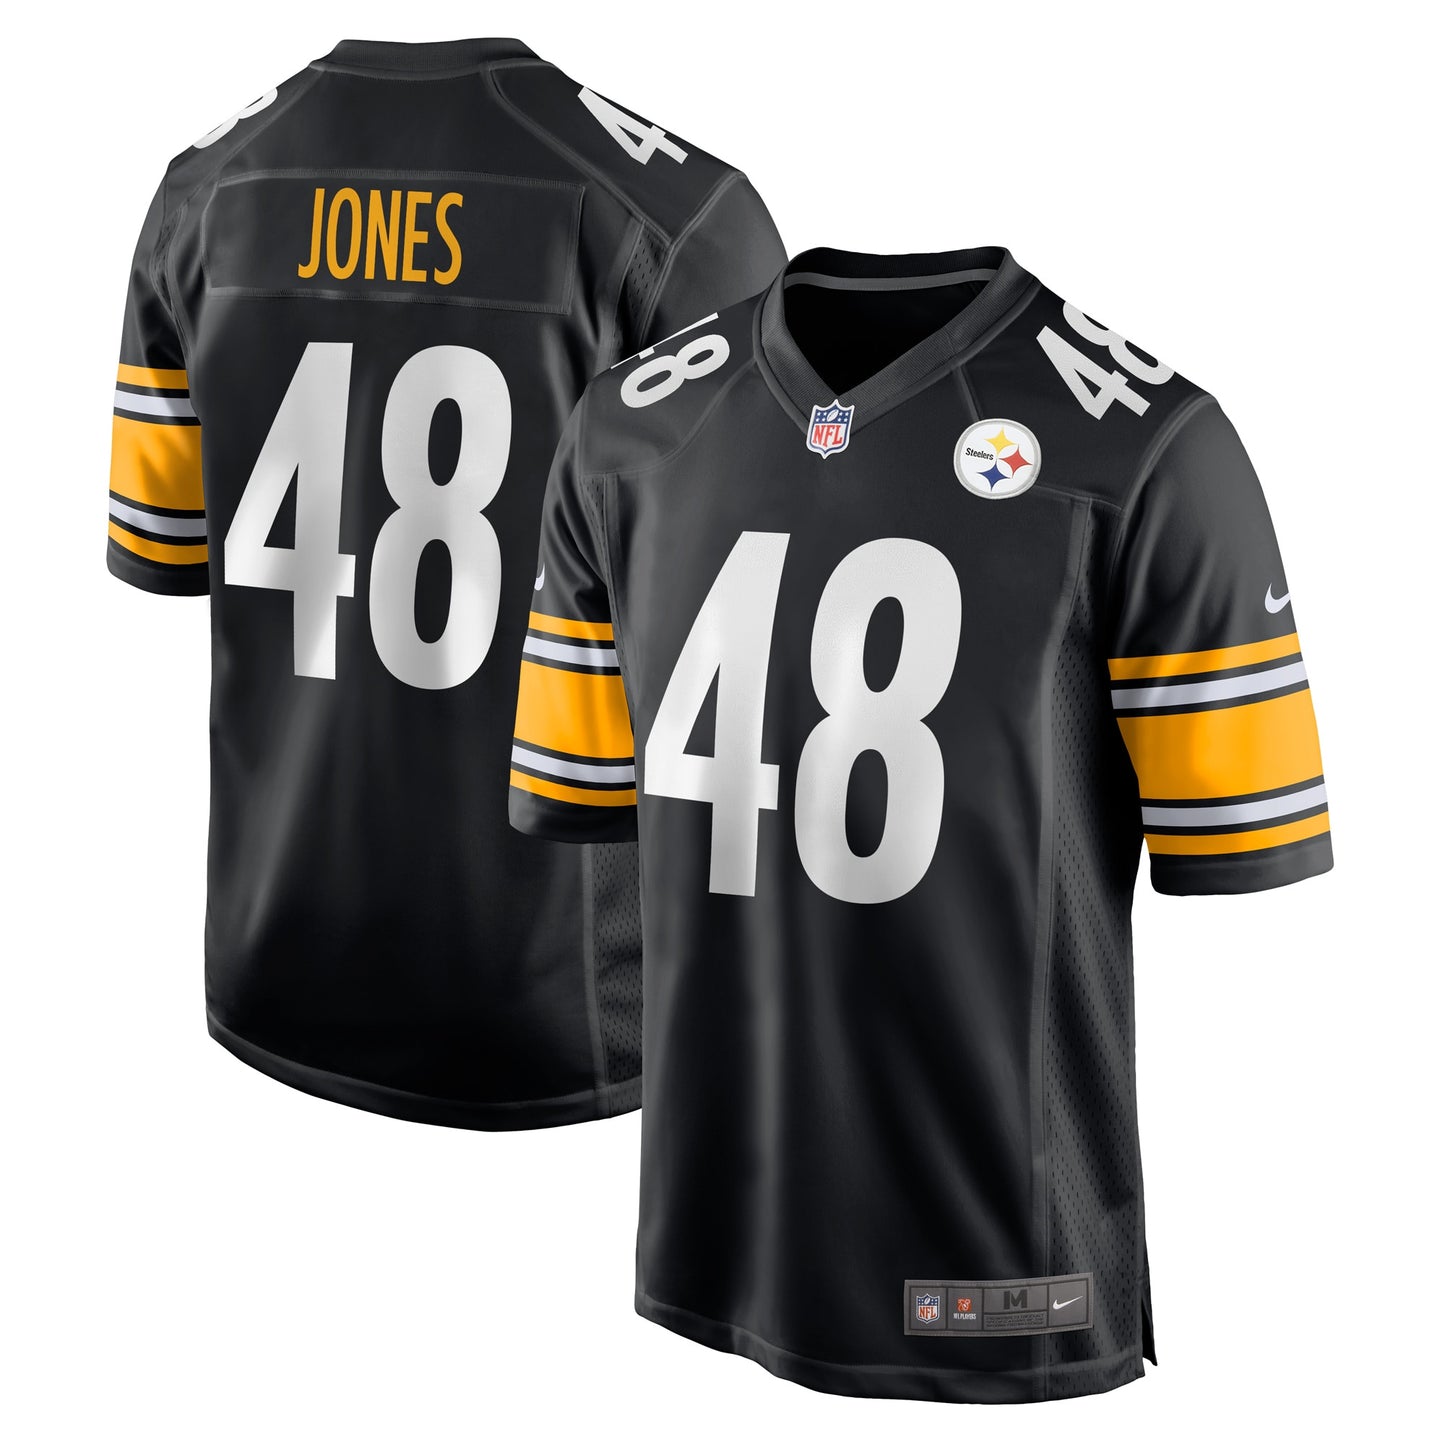 Jamir Jones Pittsburgh Steelers Nike Team Game Player Jersey - Black